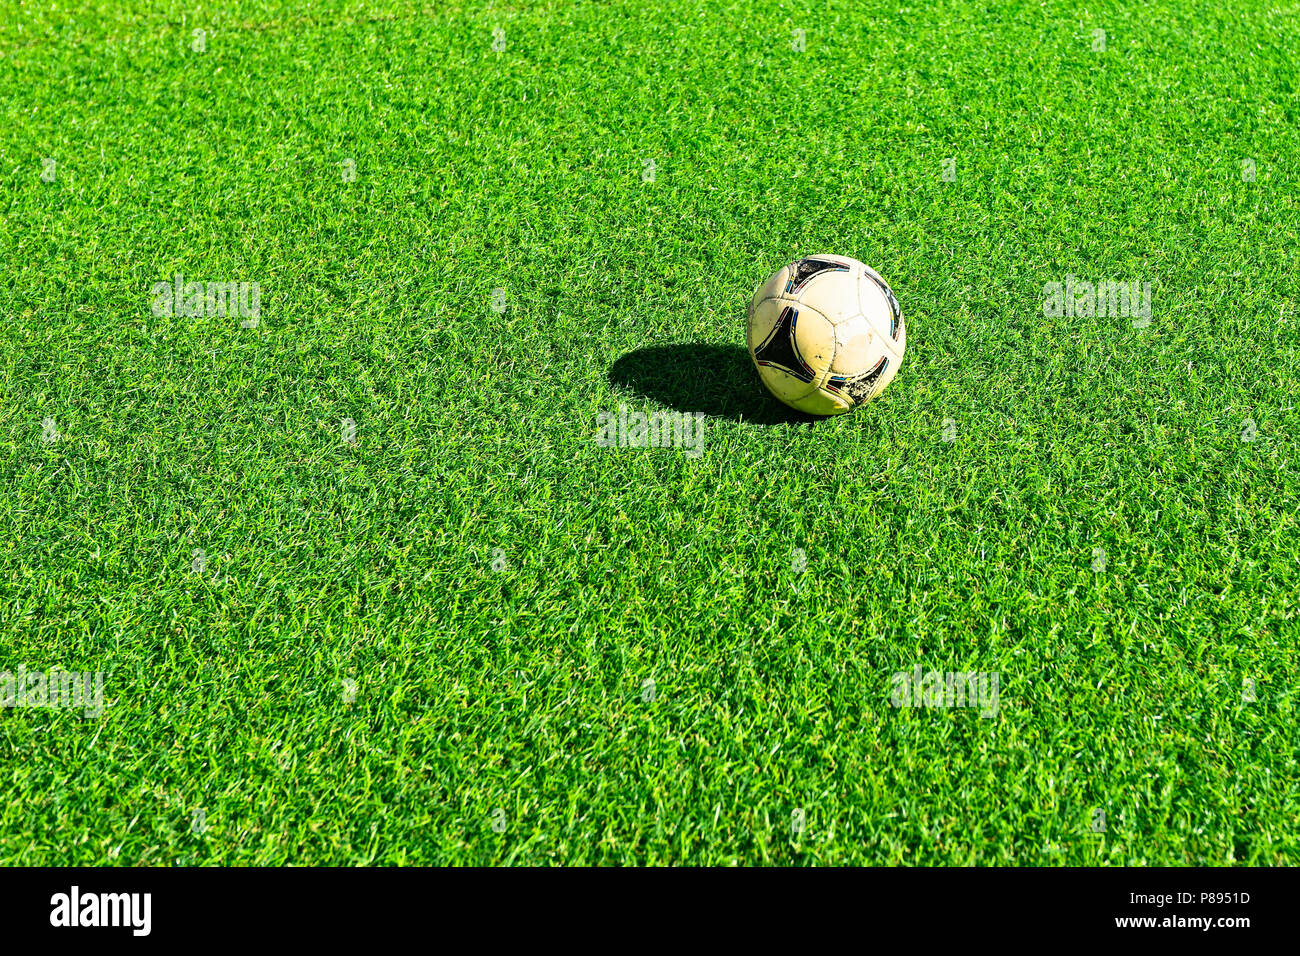 Alte, gebrauchte Fußball-Ball auf der sonnenbeschienenen Kunstrasen oder  Gras der grünen Farbe. Freier Platz für die Eingabe von Text  Stockfotografie - Alamy